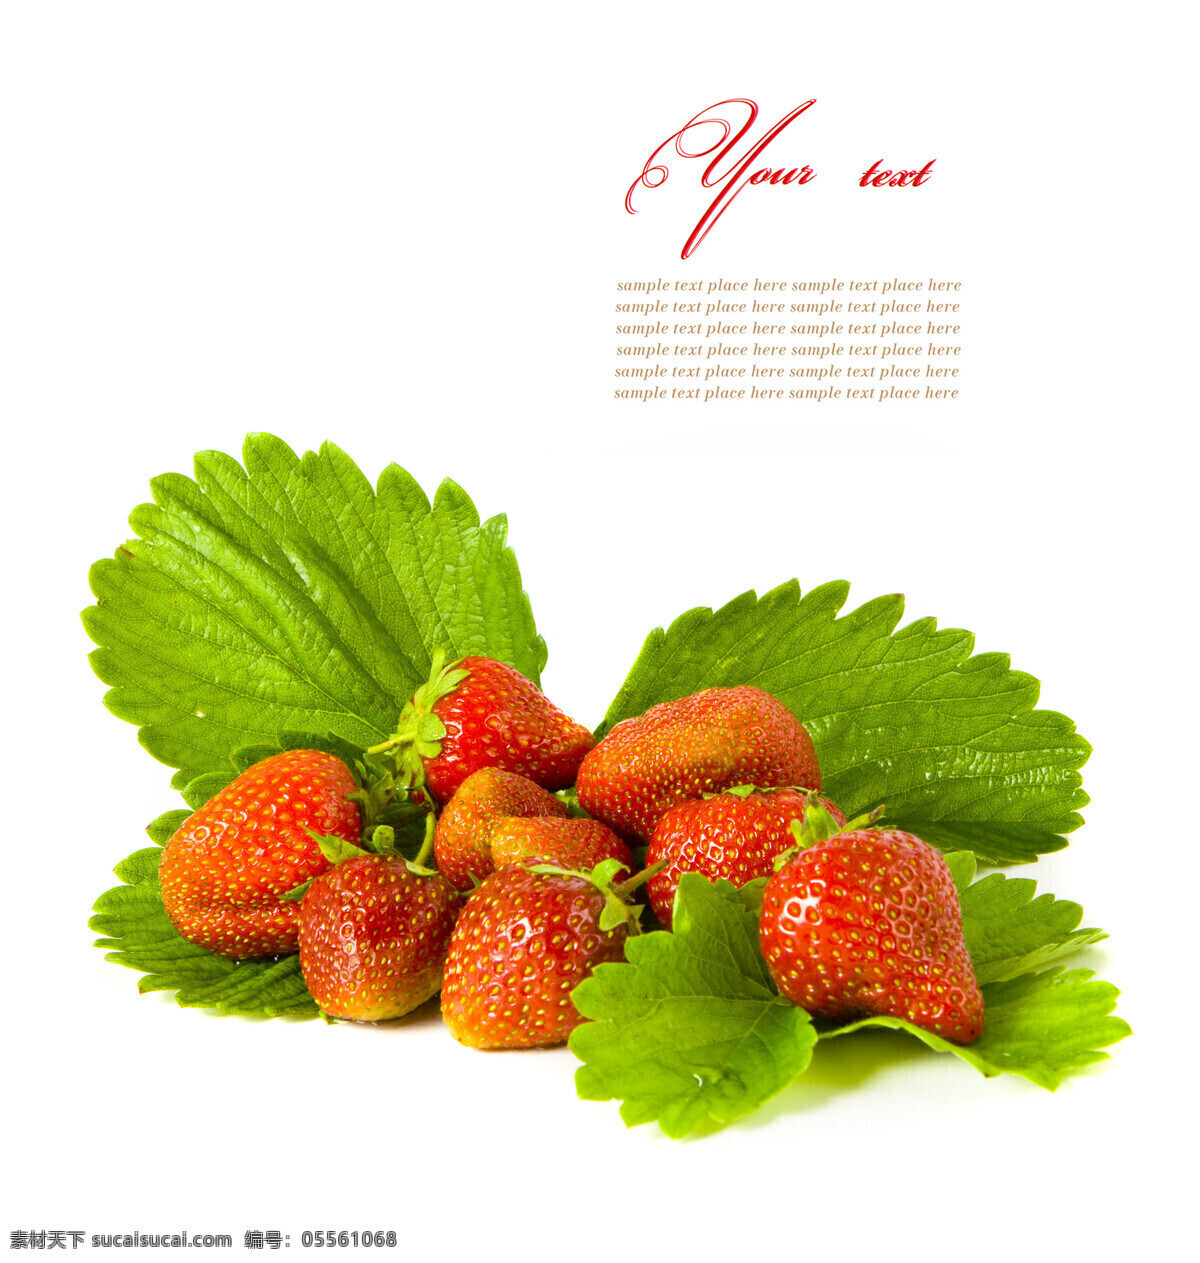 新鲜 草莓 水果 新鲜水果 绿叶 水果摄影 花草树木 生物世界